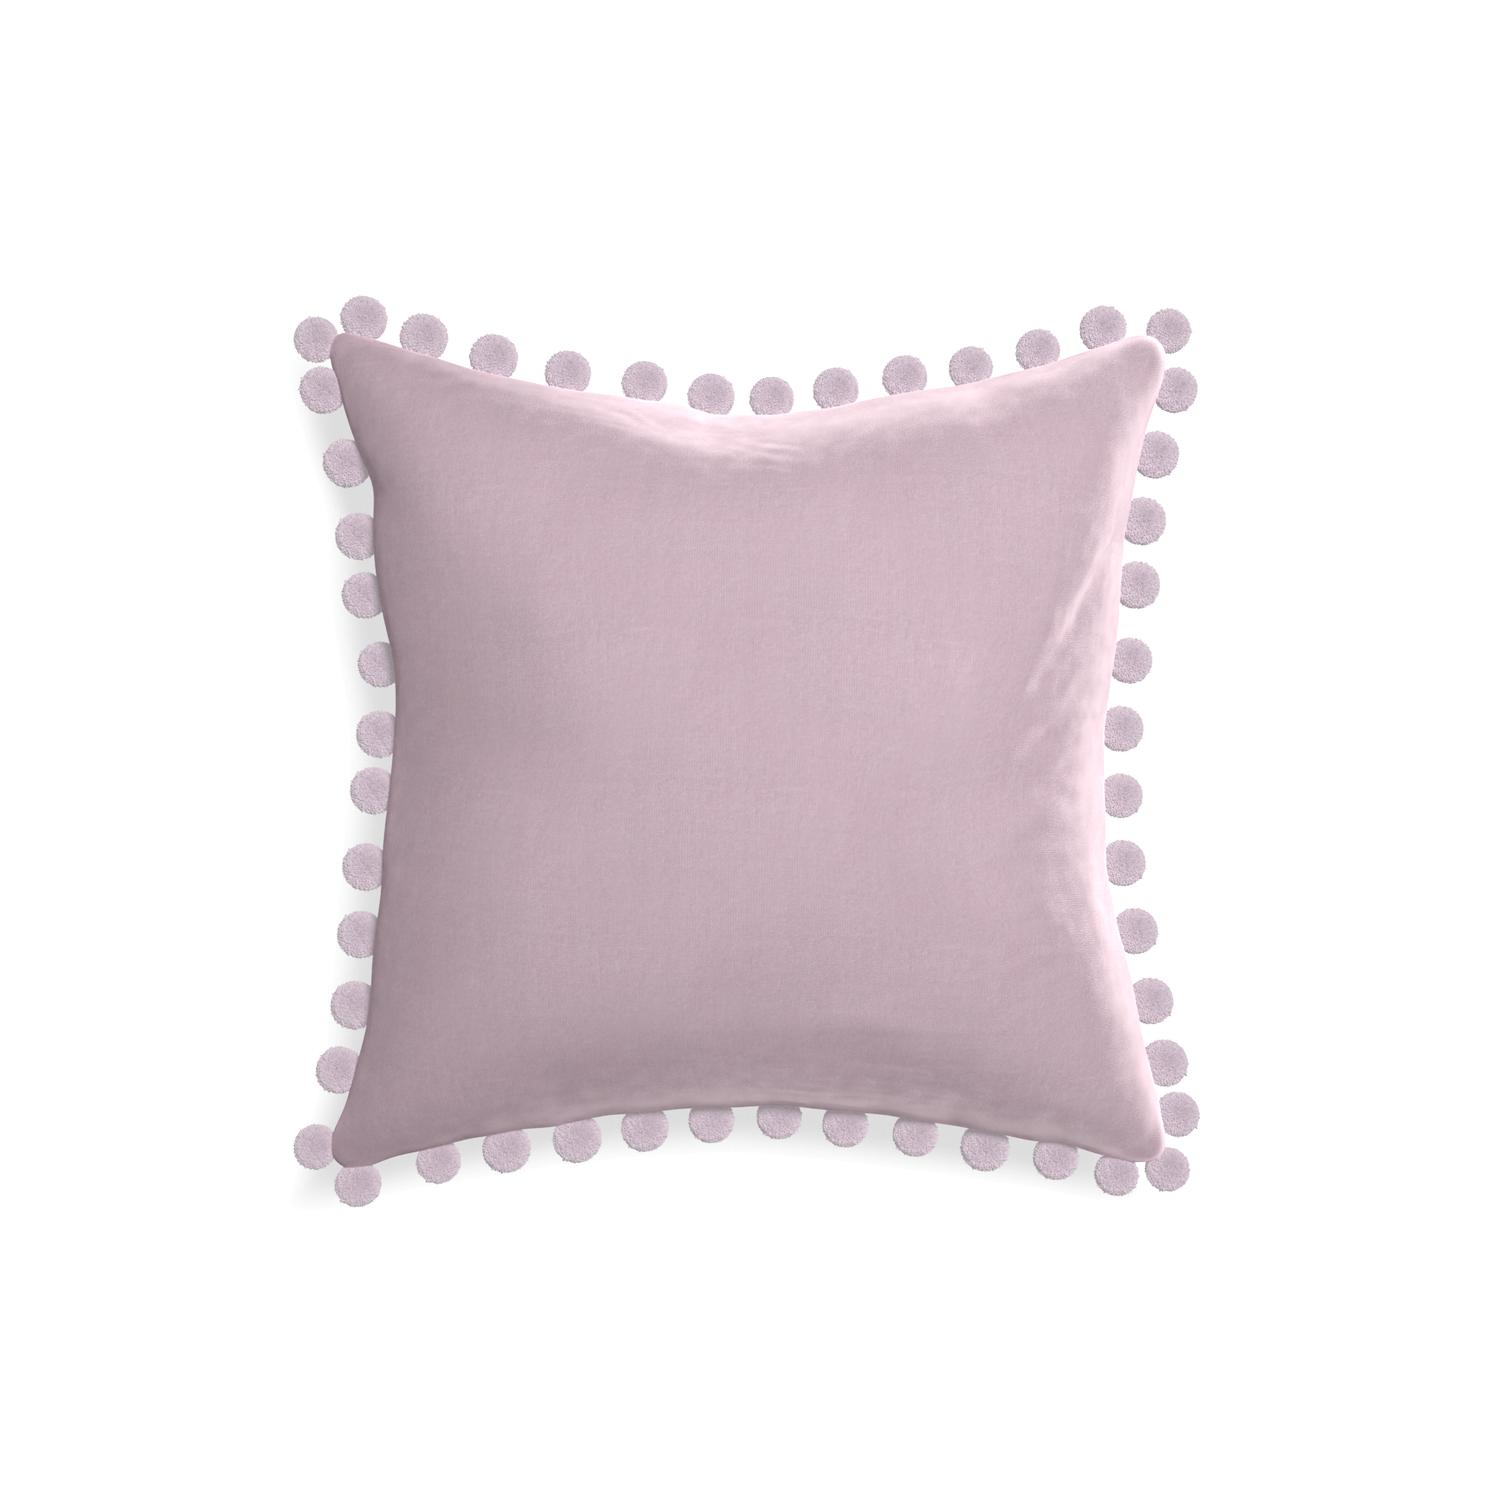 square lilac velvet pillow with lilac pom poms